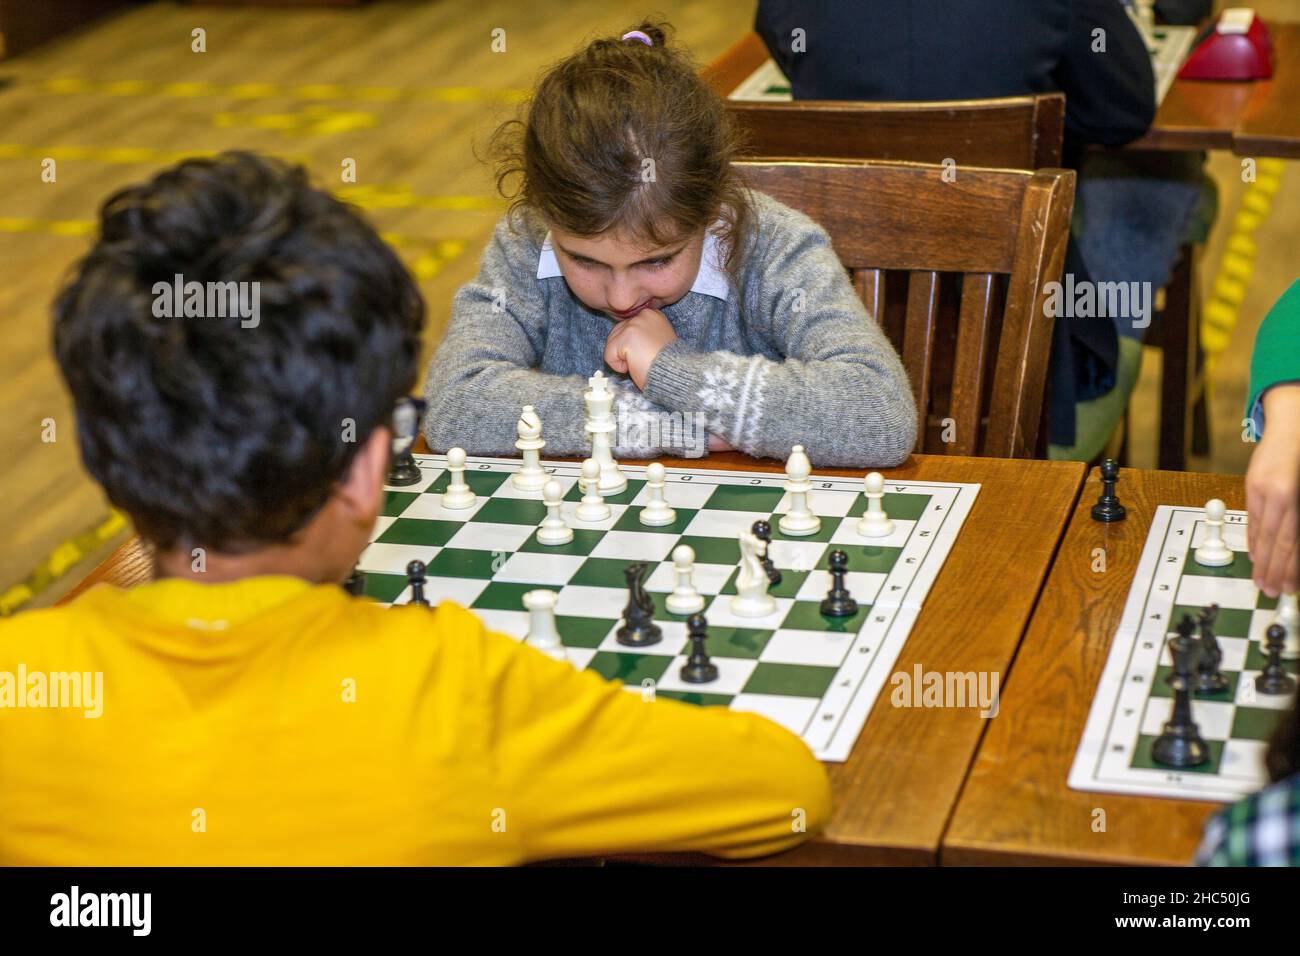 Jeux intelligents.Un enfant joue aux échecs. Fille et un échiquier.Stratégie.Pensée logique. Petite fille joue aux échecs Banque D'Images